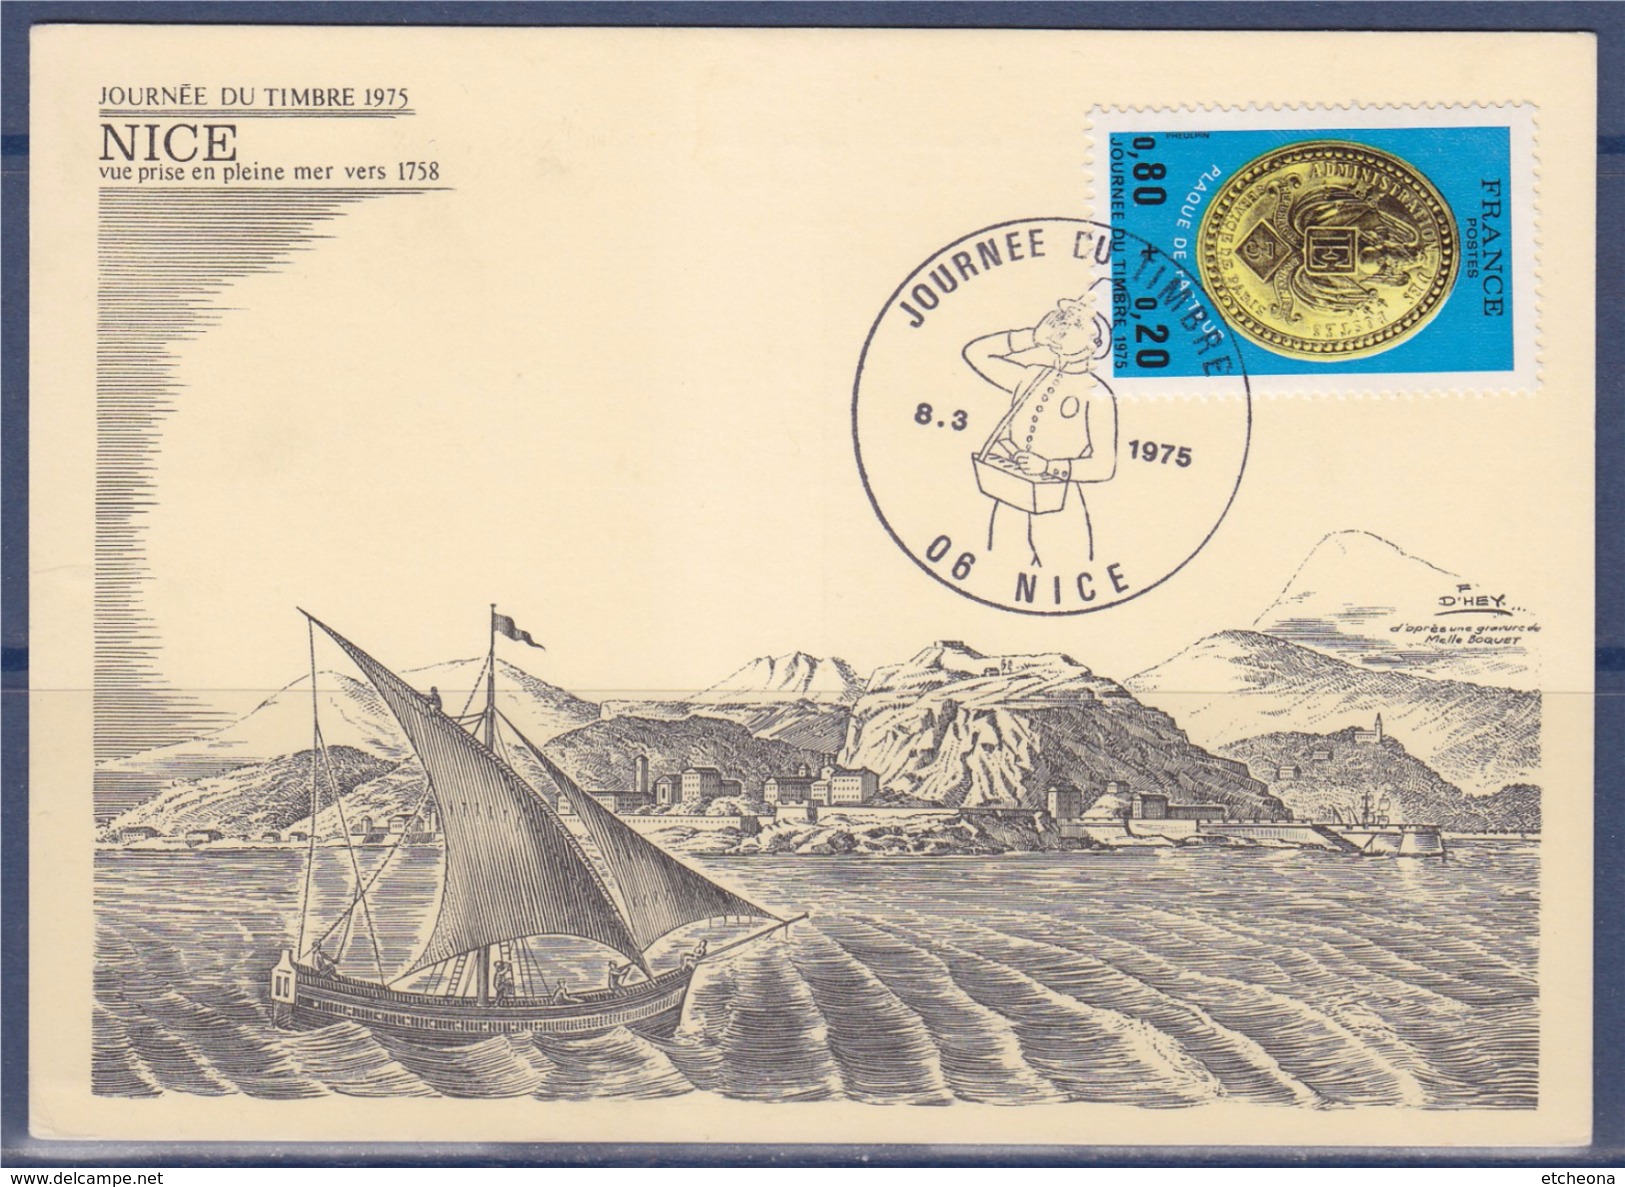 Journée Du Timbre 1975 Carte Postale 1er Jour Nice 8.3.75 N°1838 Illustration CP Vue Prise En Pleine Mer Vers 1758 - Journée Du Timbre